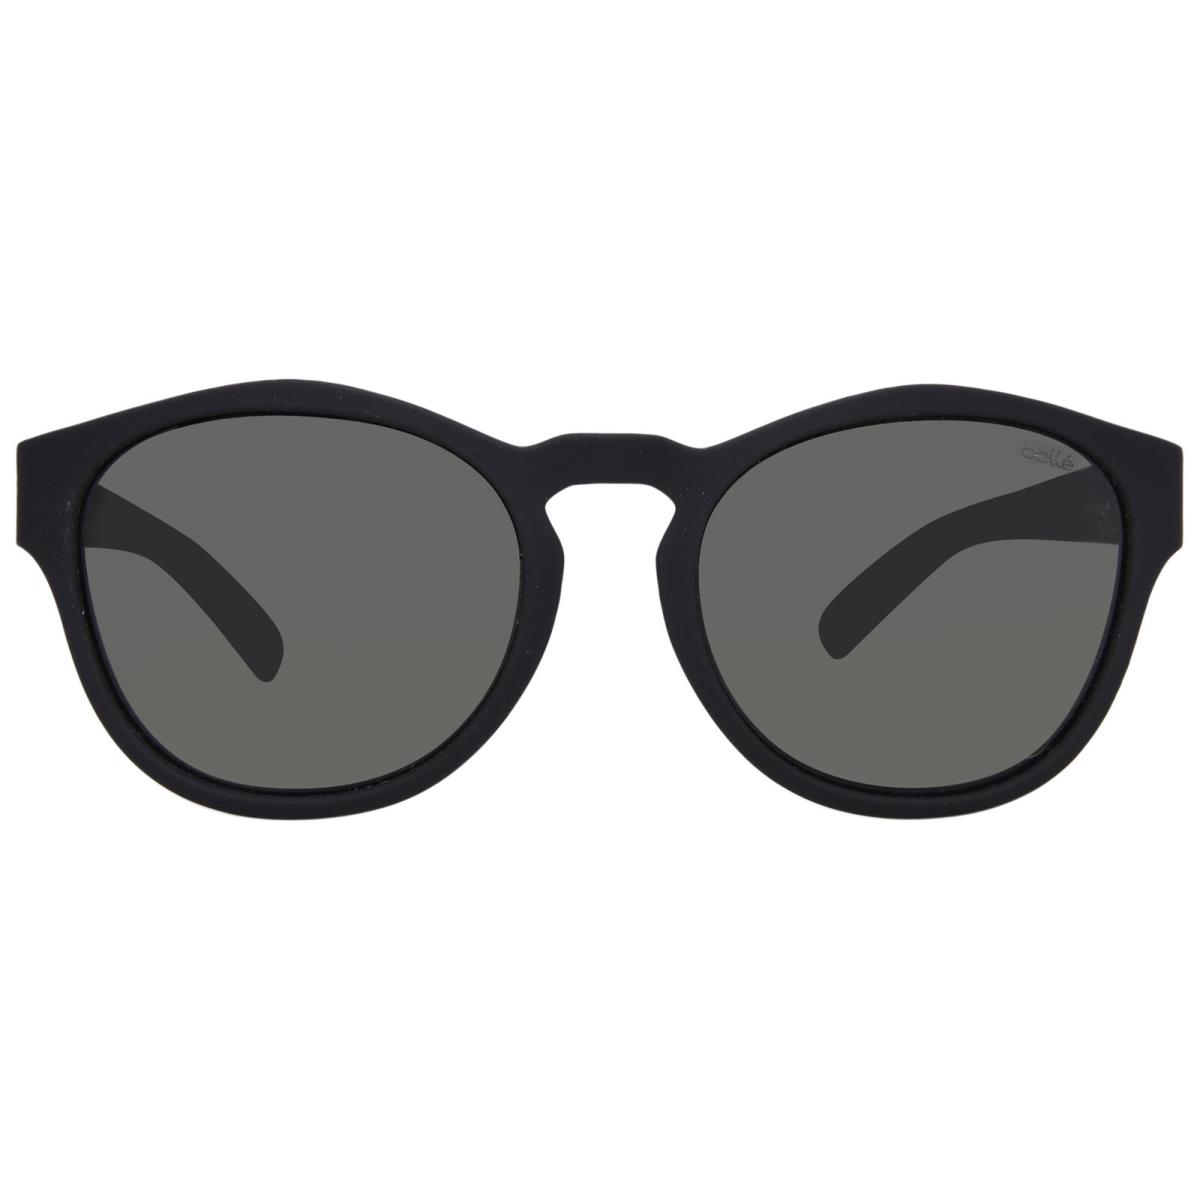 Bolle Rooke 12347 Sunglasses Black Rubber/polarized Grey Round Shape 54mm